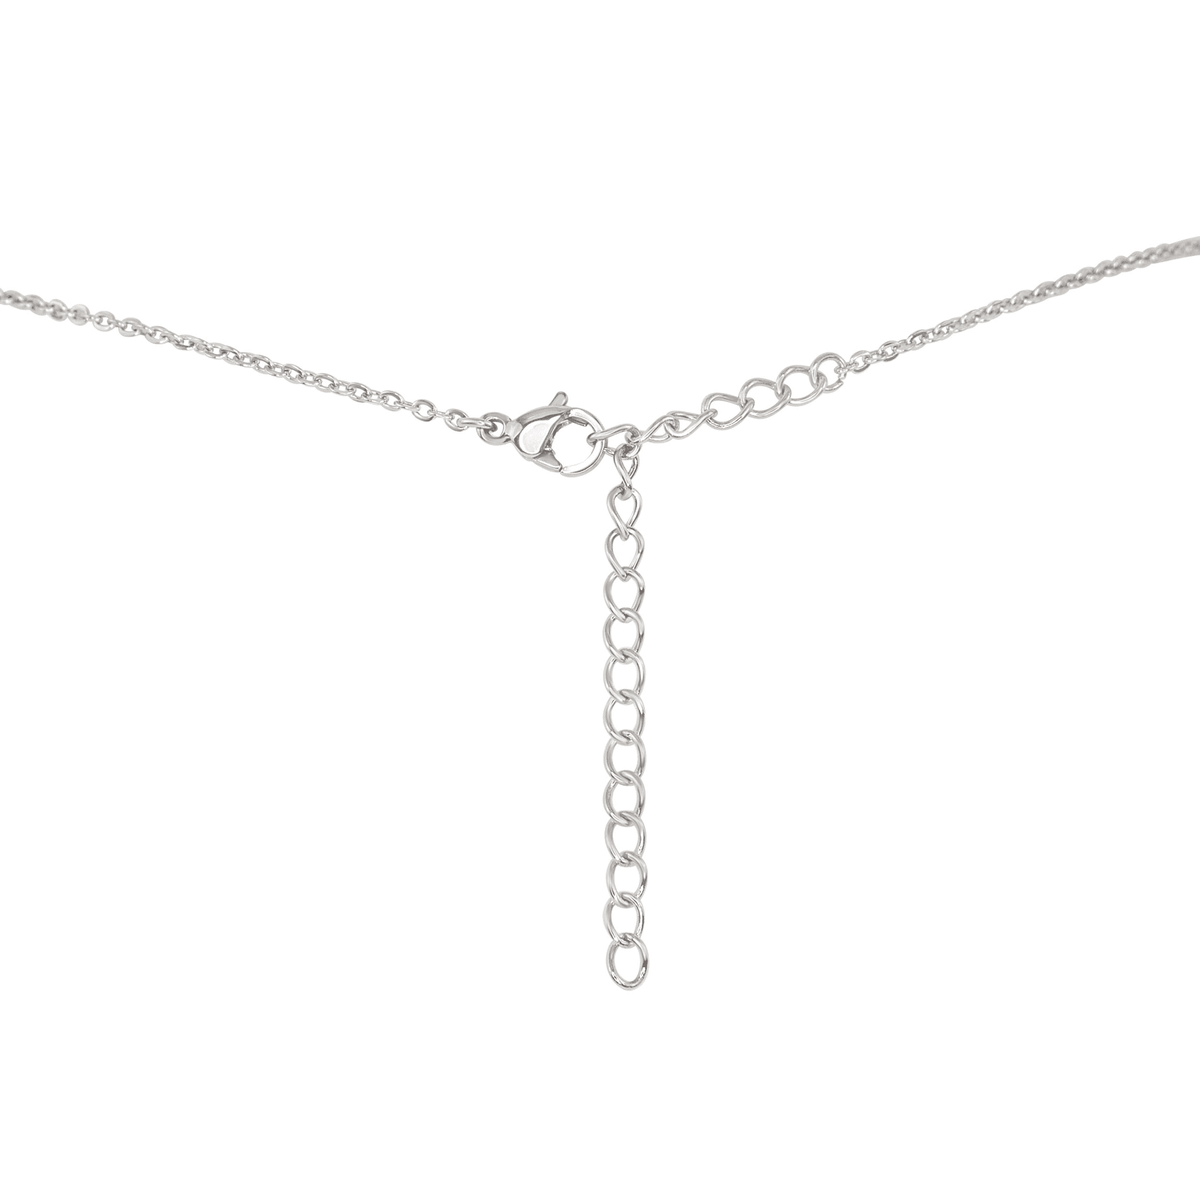 Dainty Carnelian Lariat Necklace - Dainty Carnelian Lariat Necklace - 14k Gold Fill - Luna Tide Handmade Crystal Jewellery